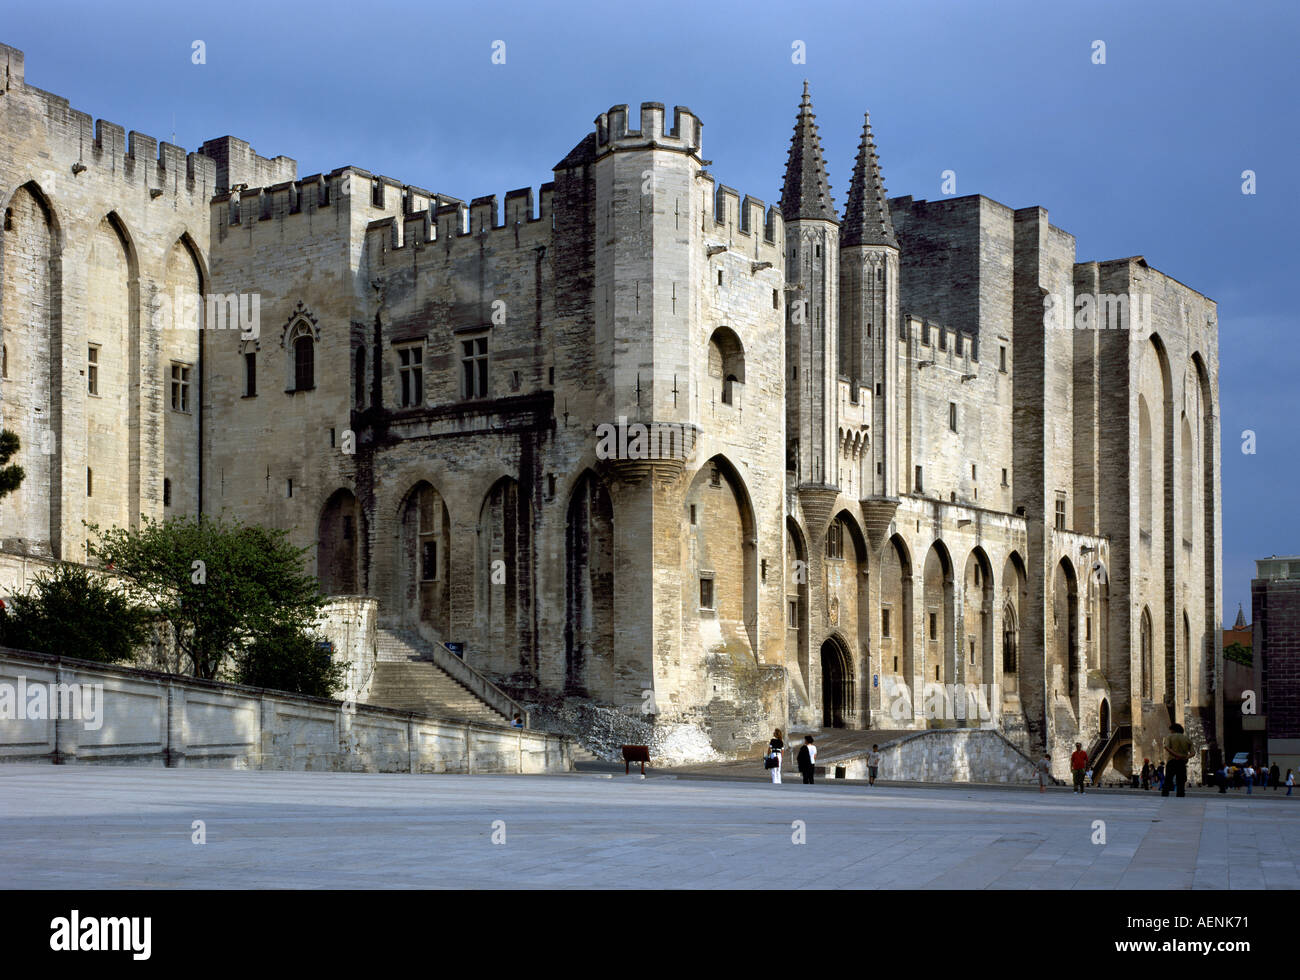 Avignon, Papstpalast, Stock Photo